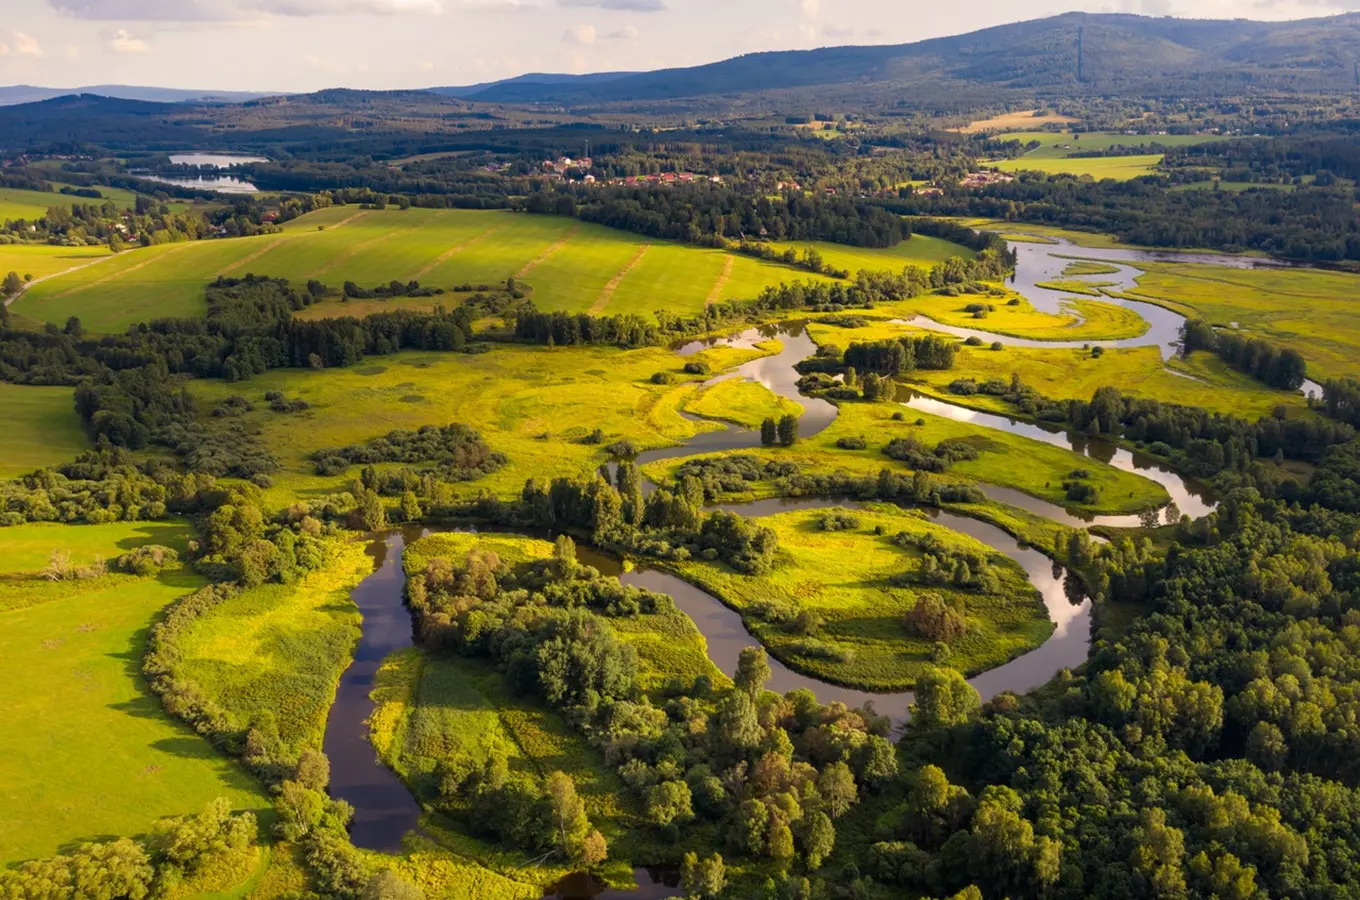 Užijte si řeky, rybníky a plavby v jižních Čechách